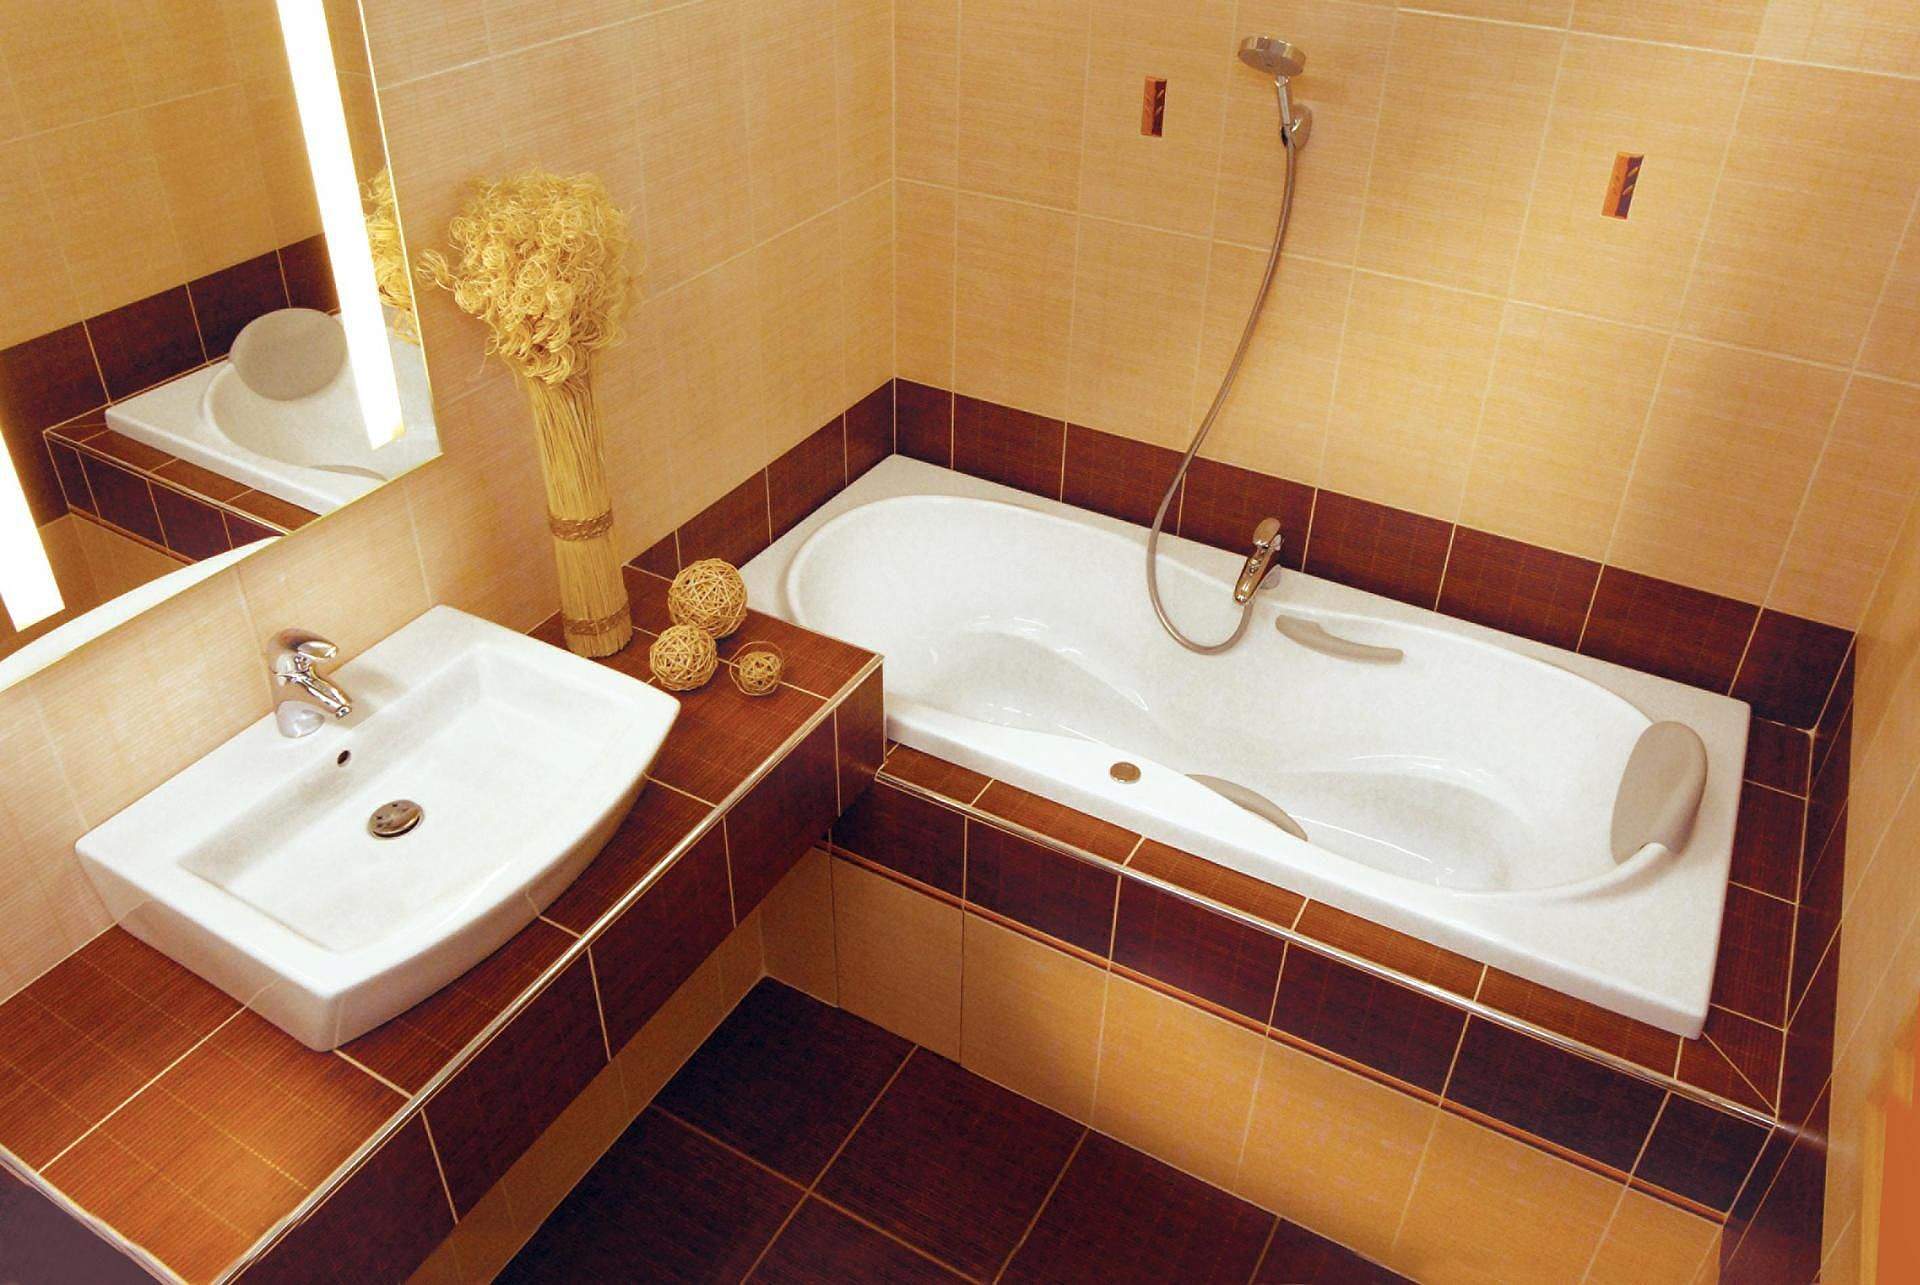 Как сделать ремонт в ванной и туалете дешево и красиво фото пластиковыми панелями